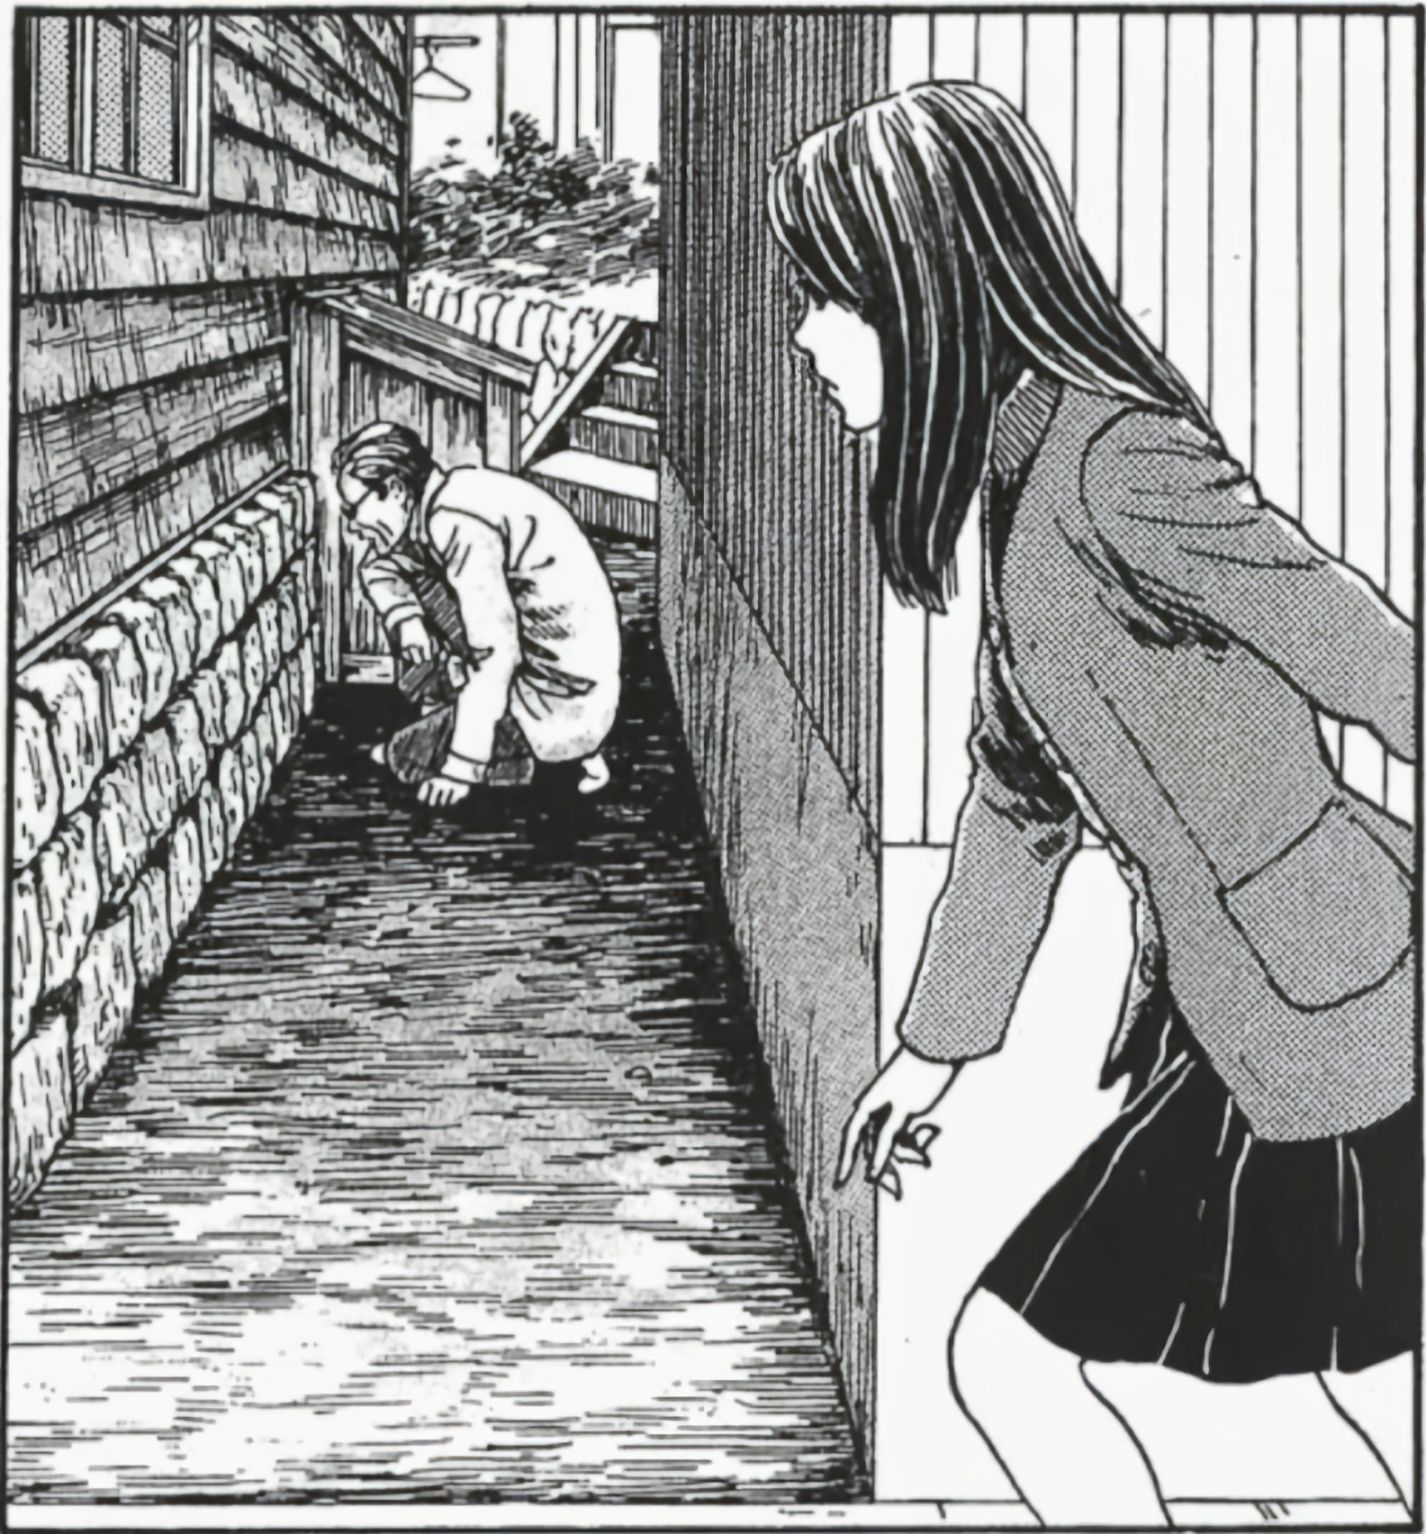 【影視動漫】伊藤潤二的頂級恐怖漫畫《漩渦》-第6張